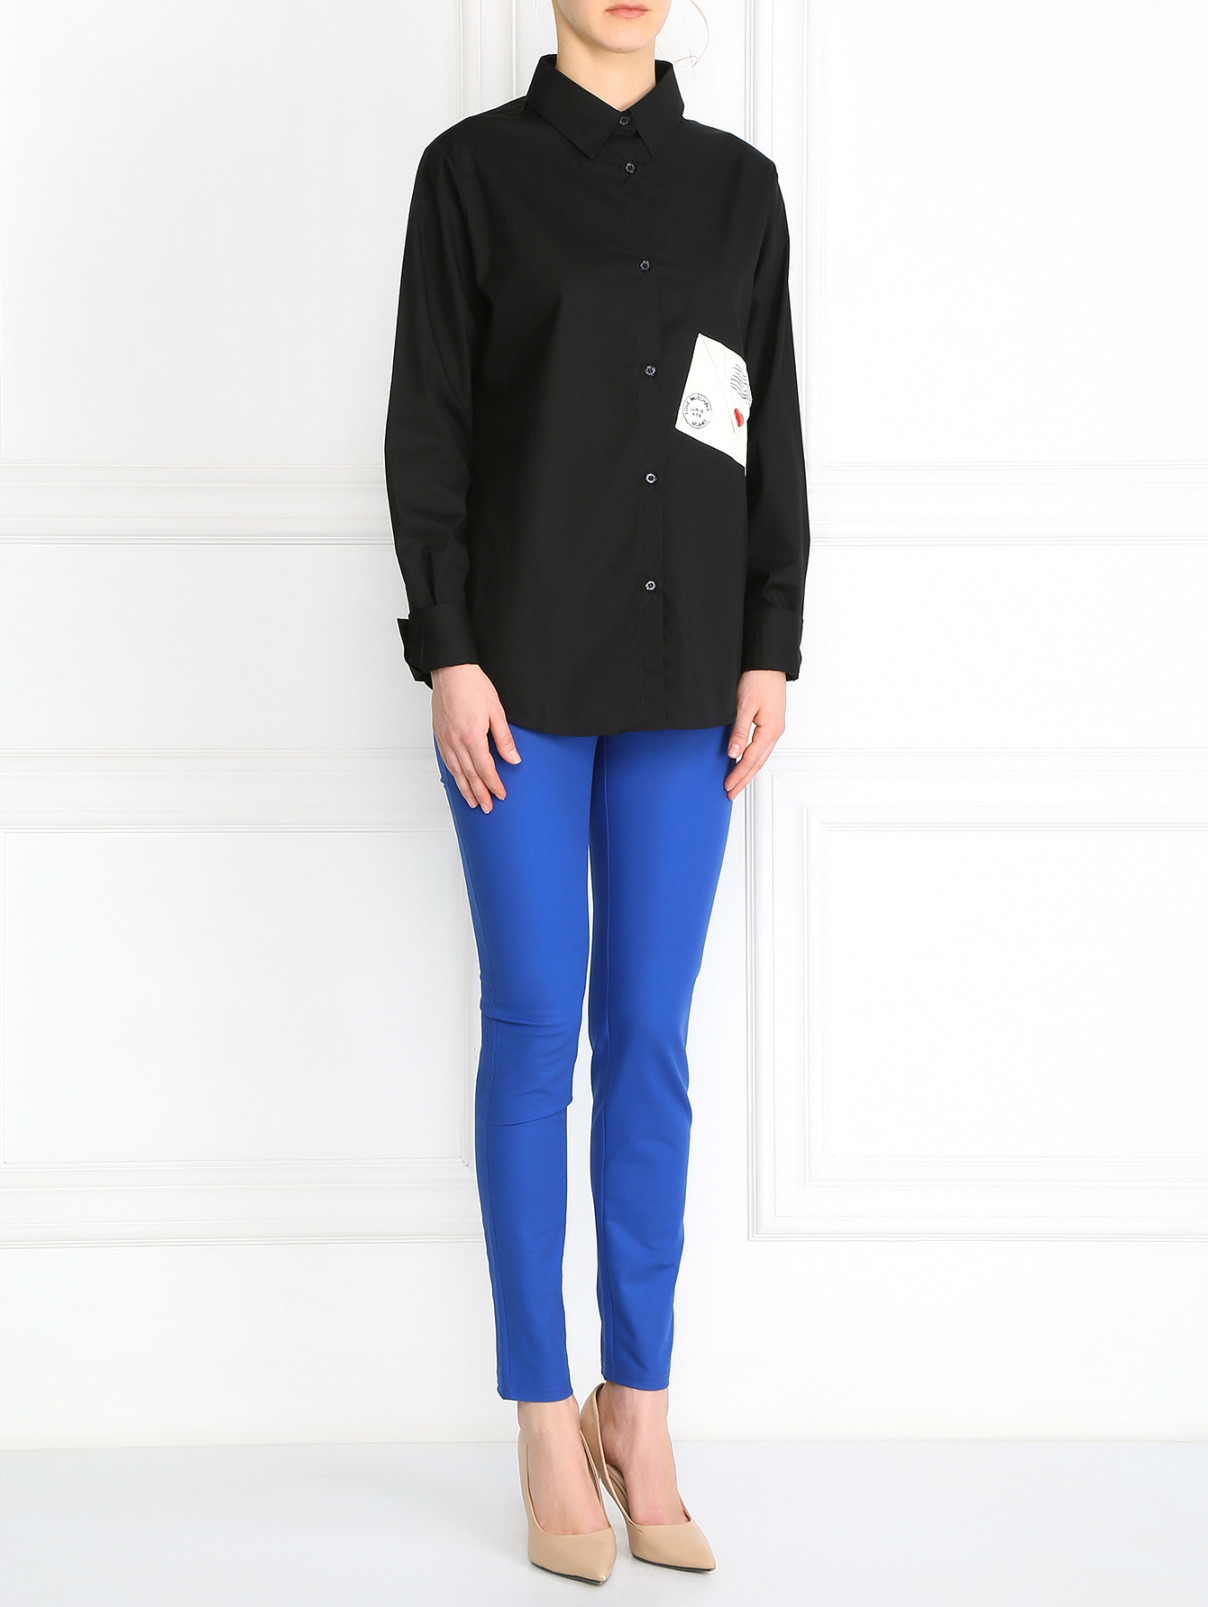 Узкие брюки из хлопка Moschino Boutique  –  Модель Общий вид  – Цвет:  Синий